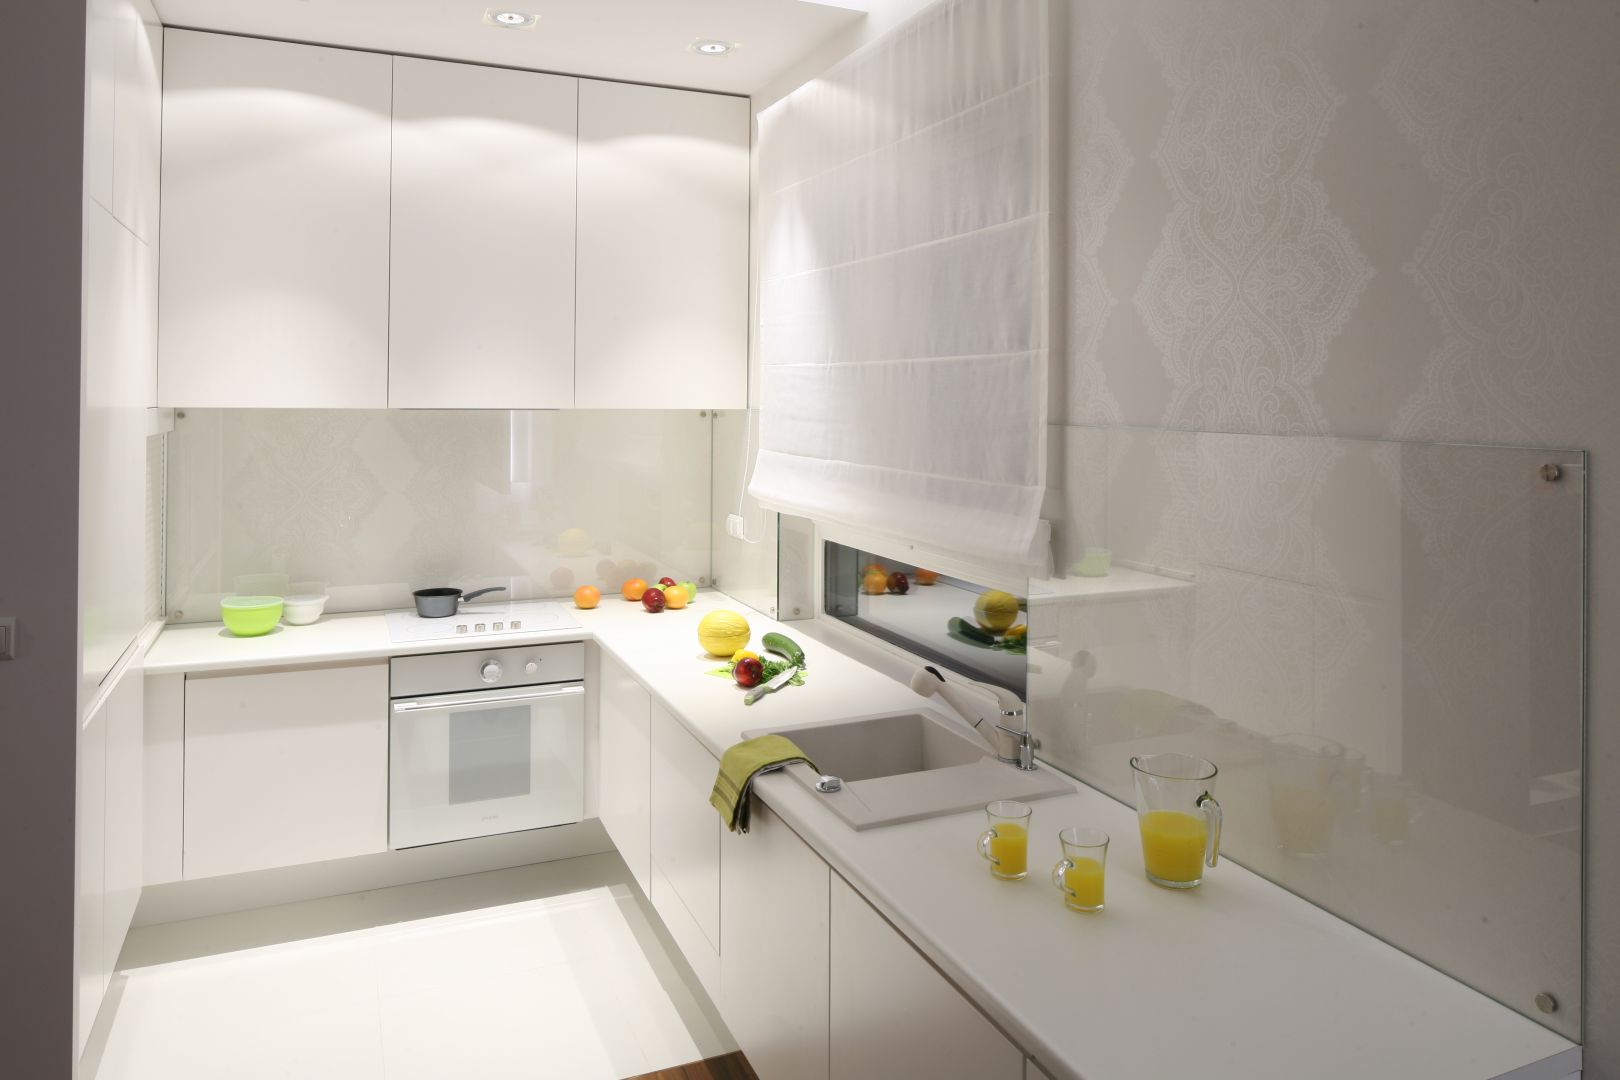 W wąskiej kuchni biel optycznie powiększa przestrzeń, a poprowadzone wzdłuż szafek górnych halogenowe oświetlenie dodatkowo ją rozjaśnia. Projekt Katarzyna Merta-Korzniakow. Fot. Bartosz Jarosz.